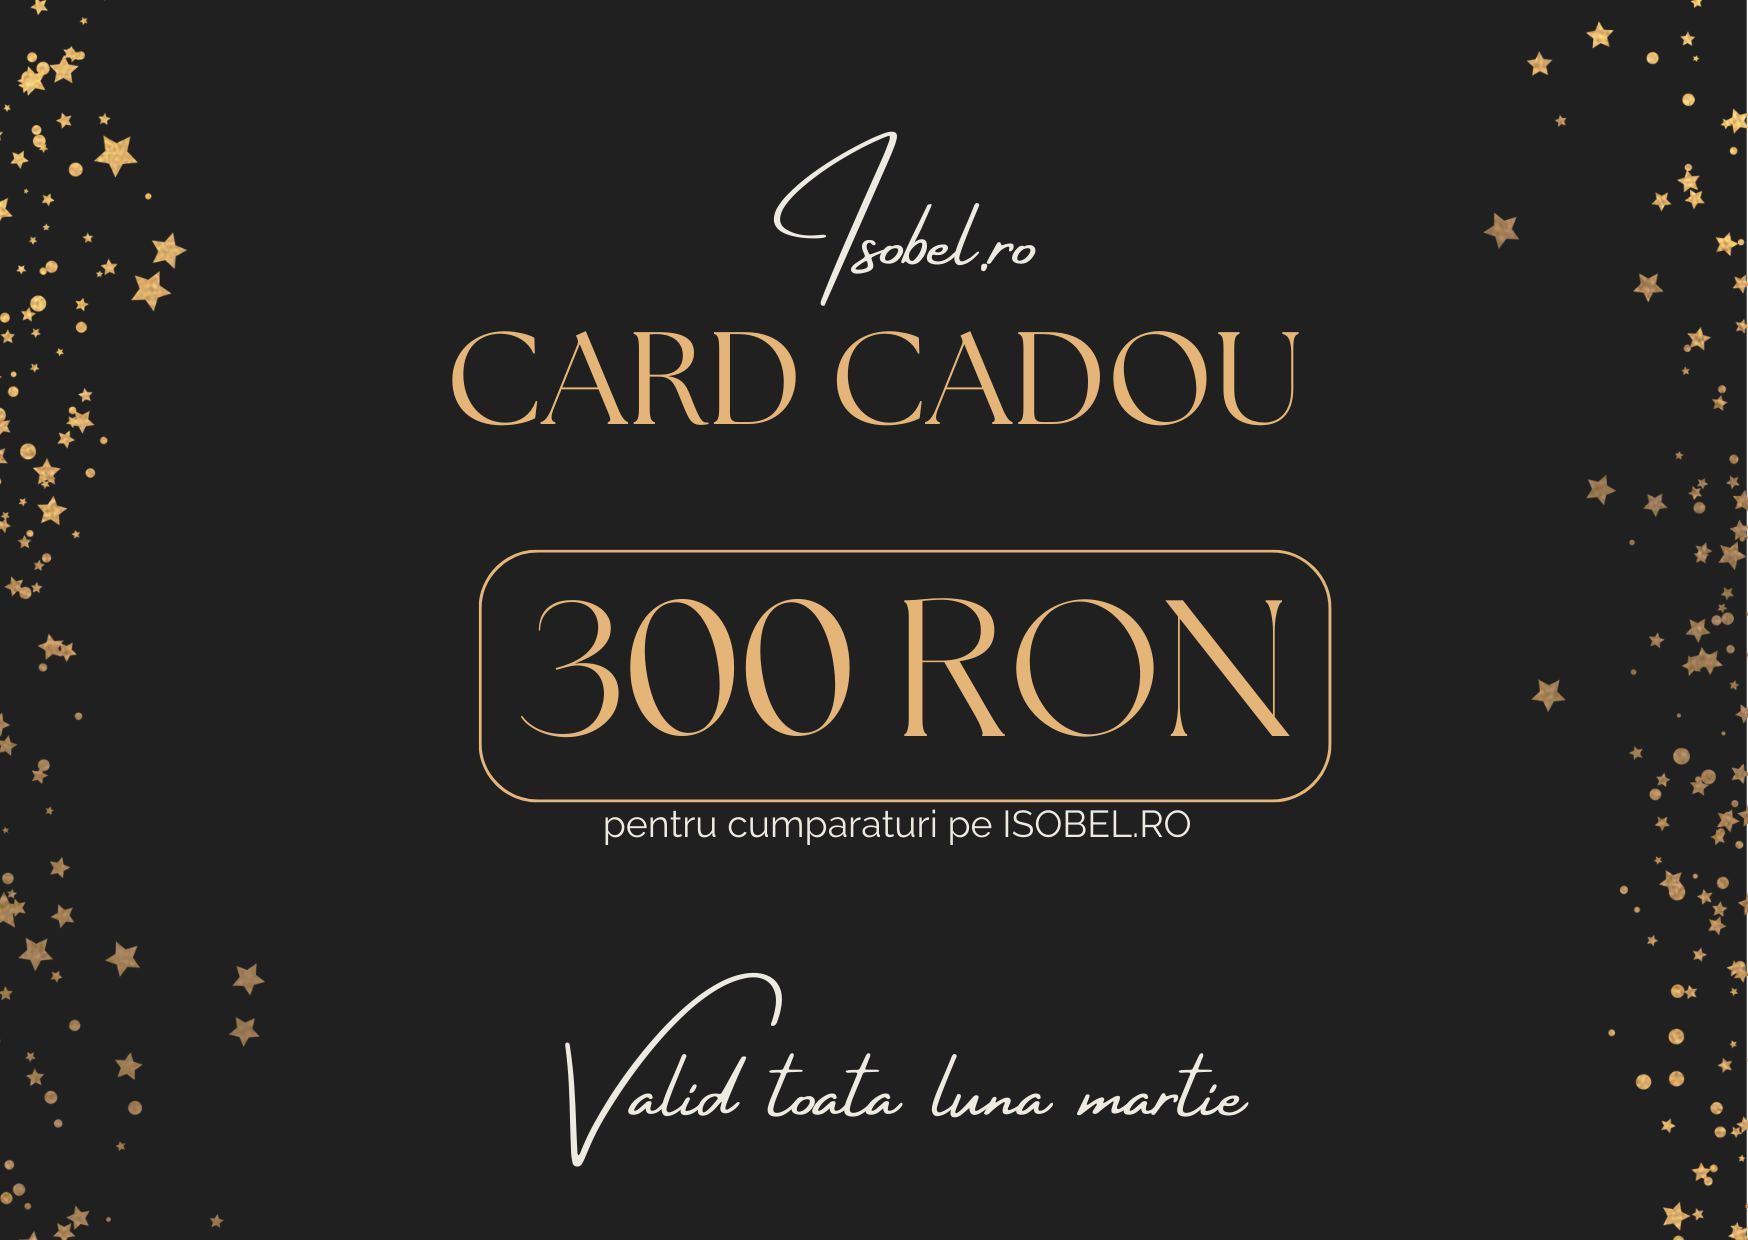 CARD CADOU